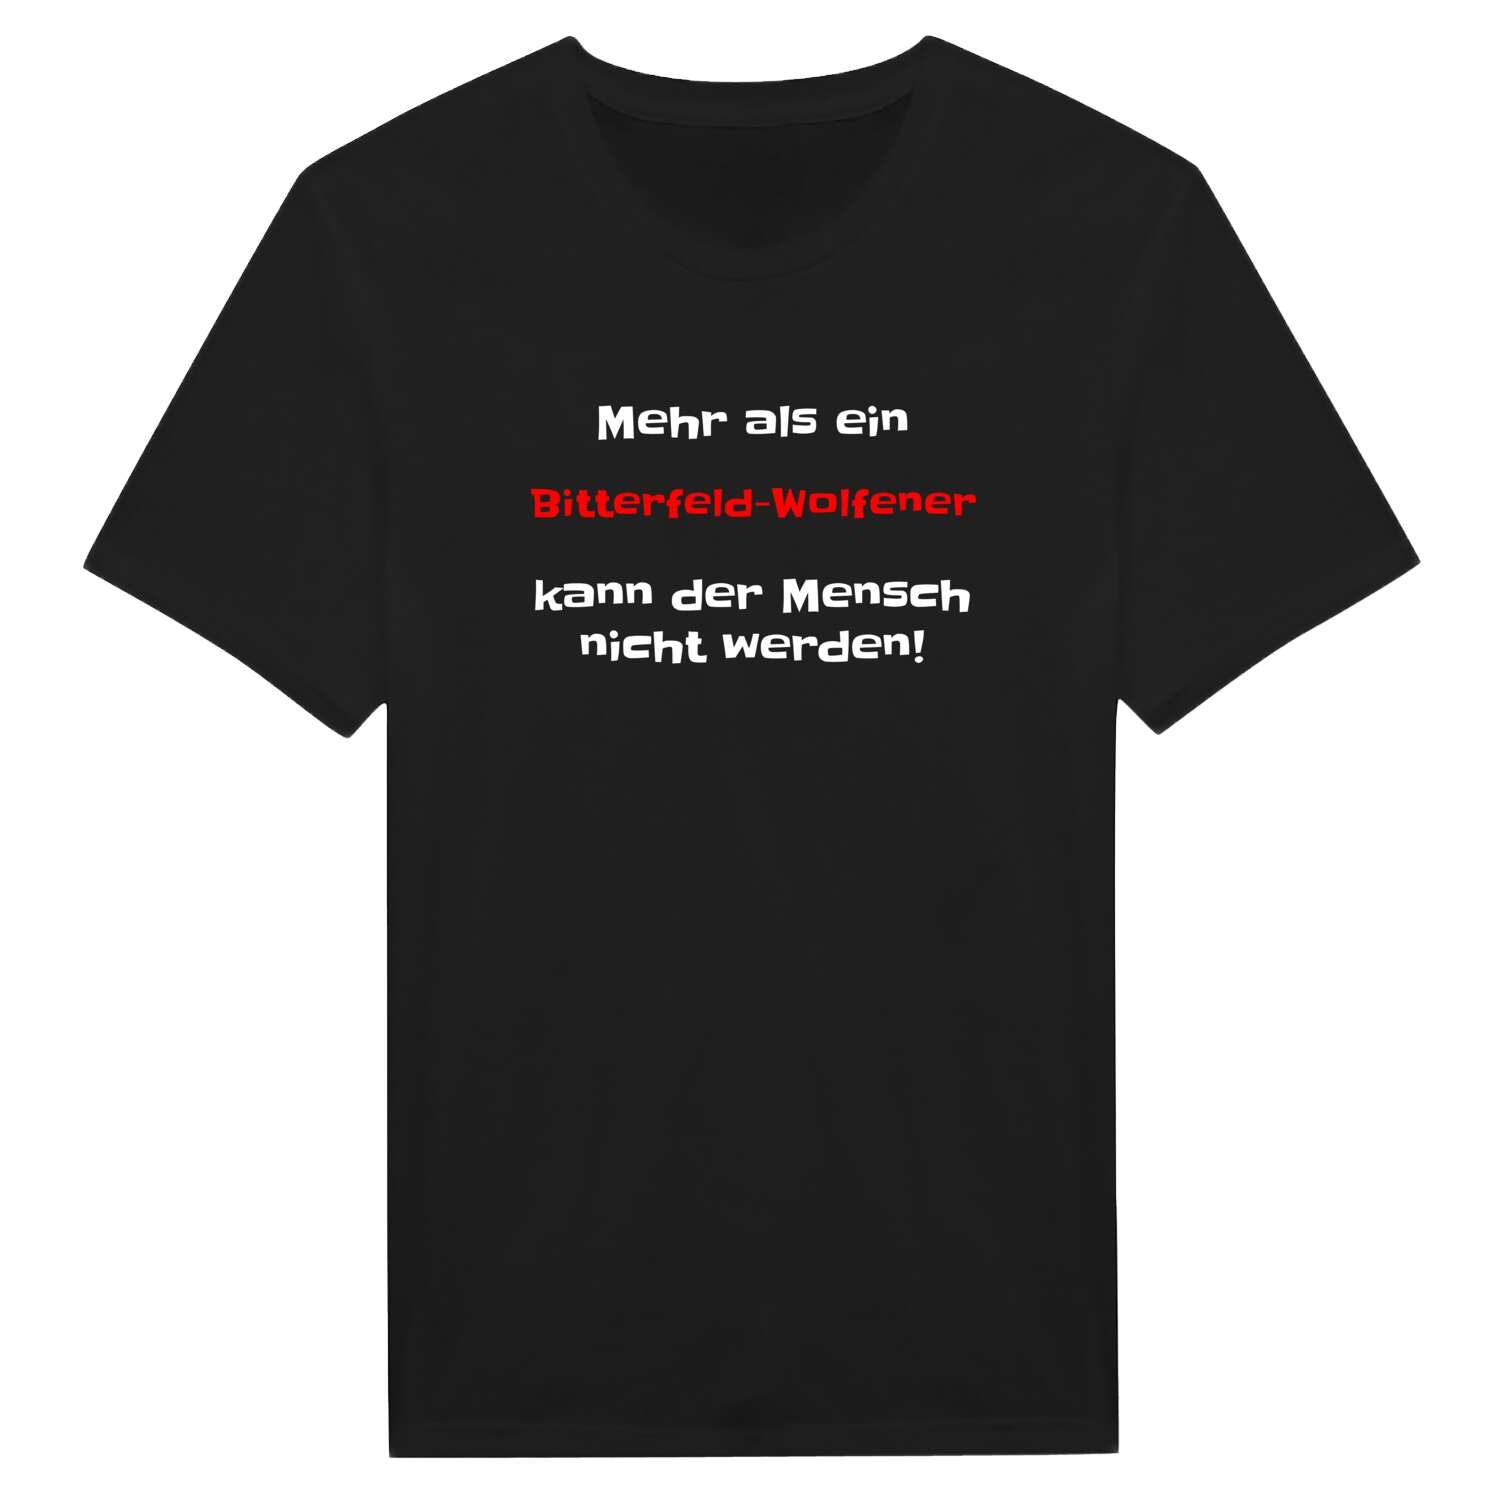 Bitterfeld-Wolfen T-Shirt »Mehr als ein«